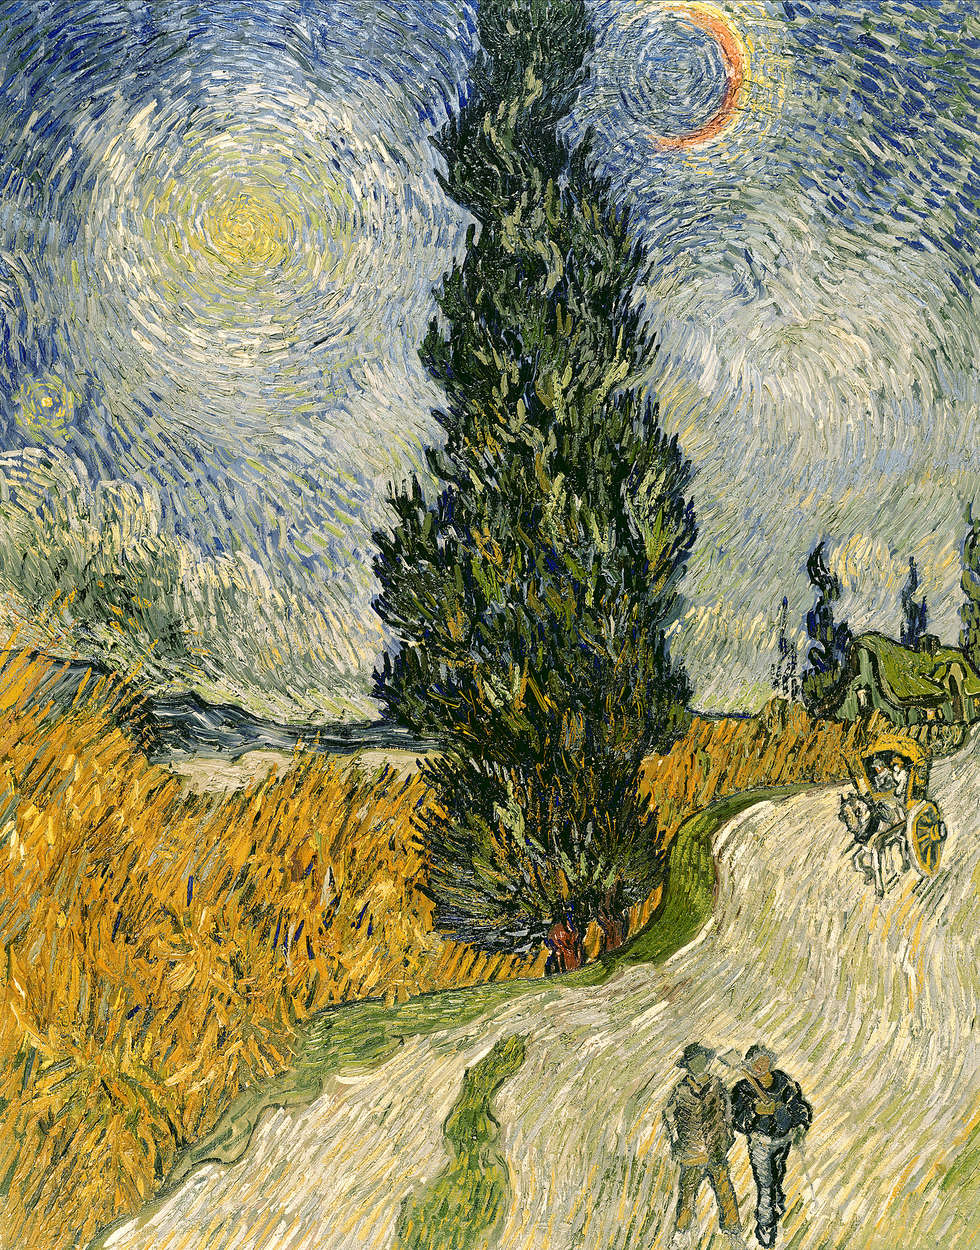             Mural "Camino con cipreses y estrella" de Vincent van Gogh
        